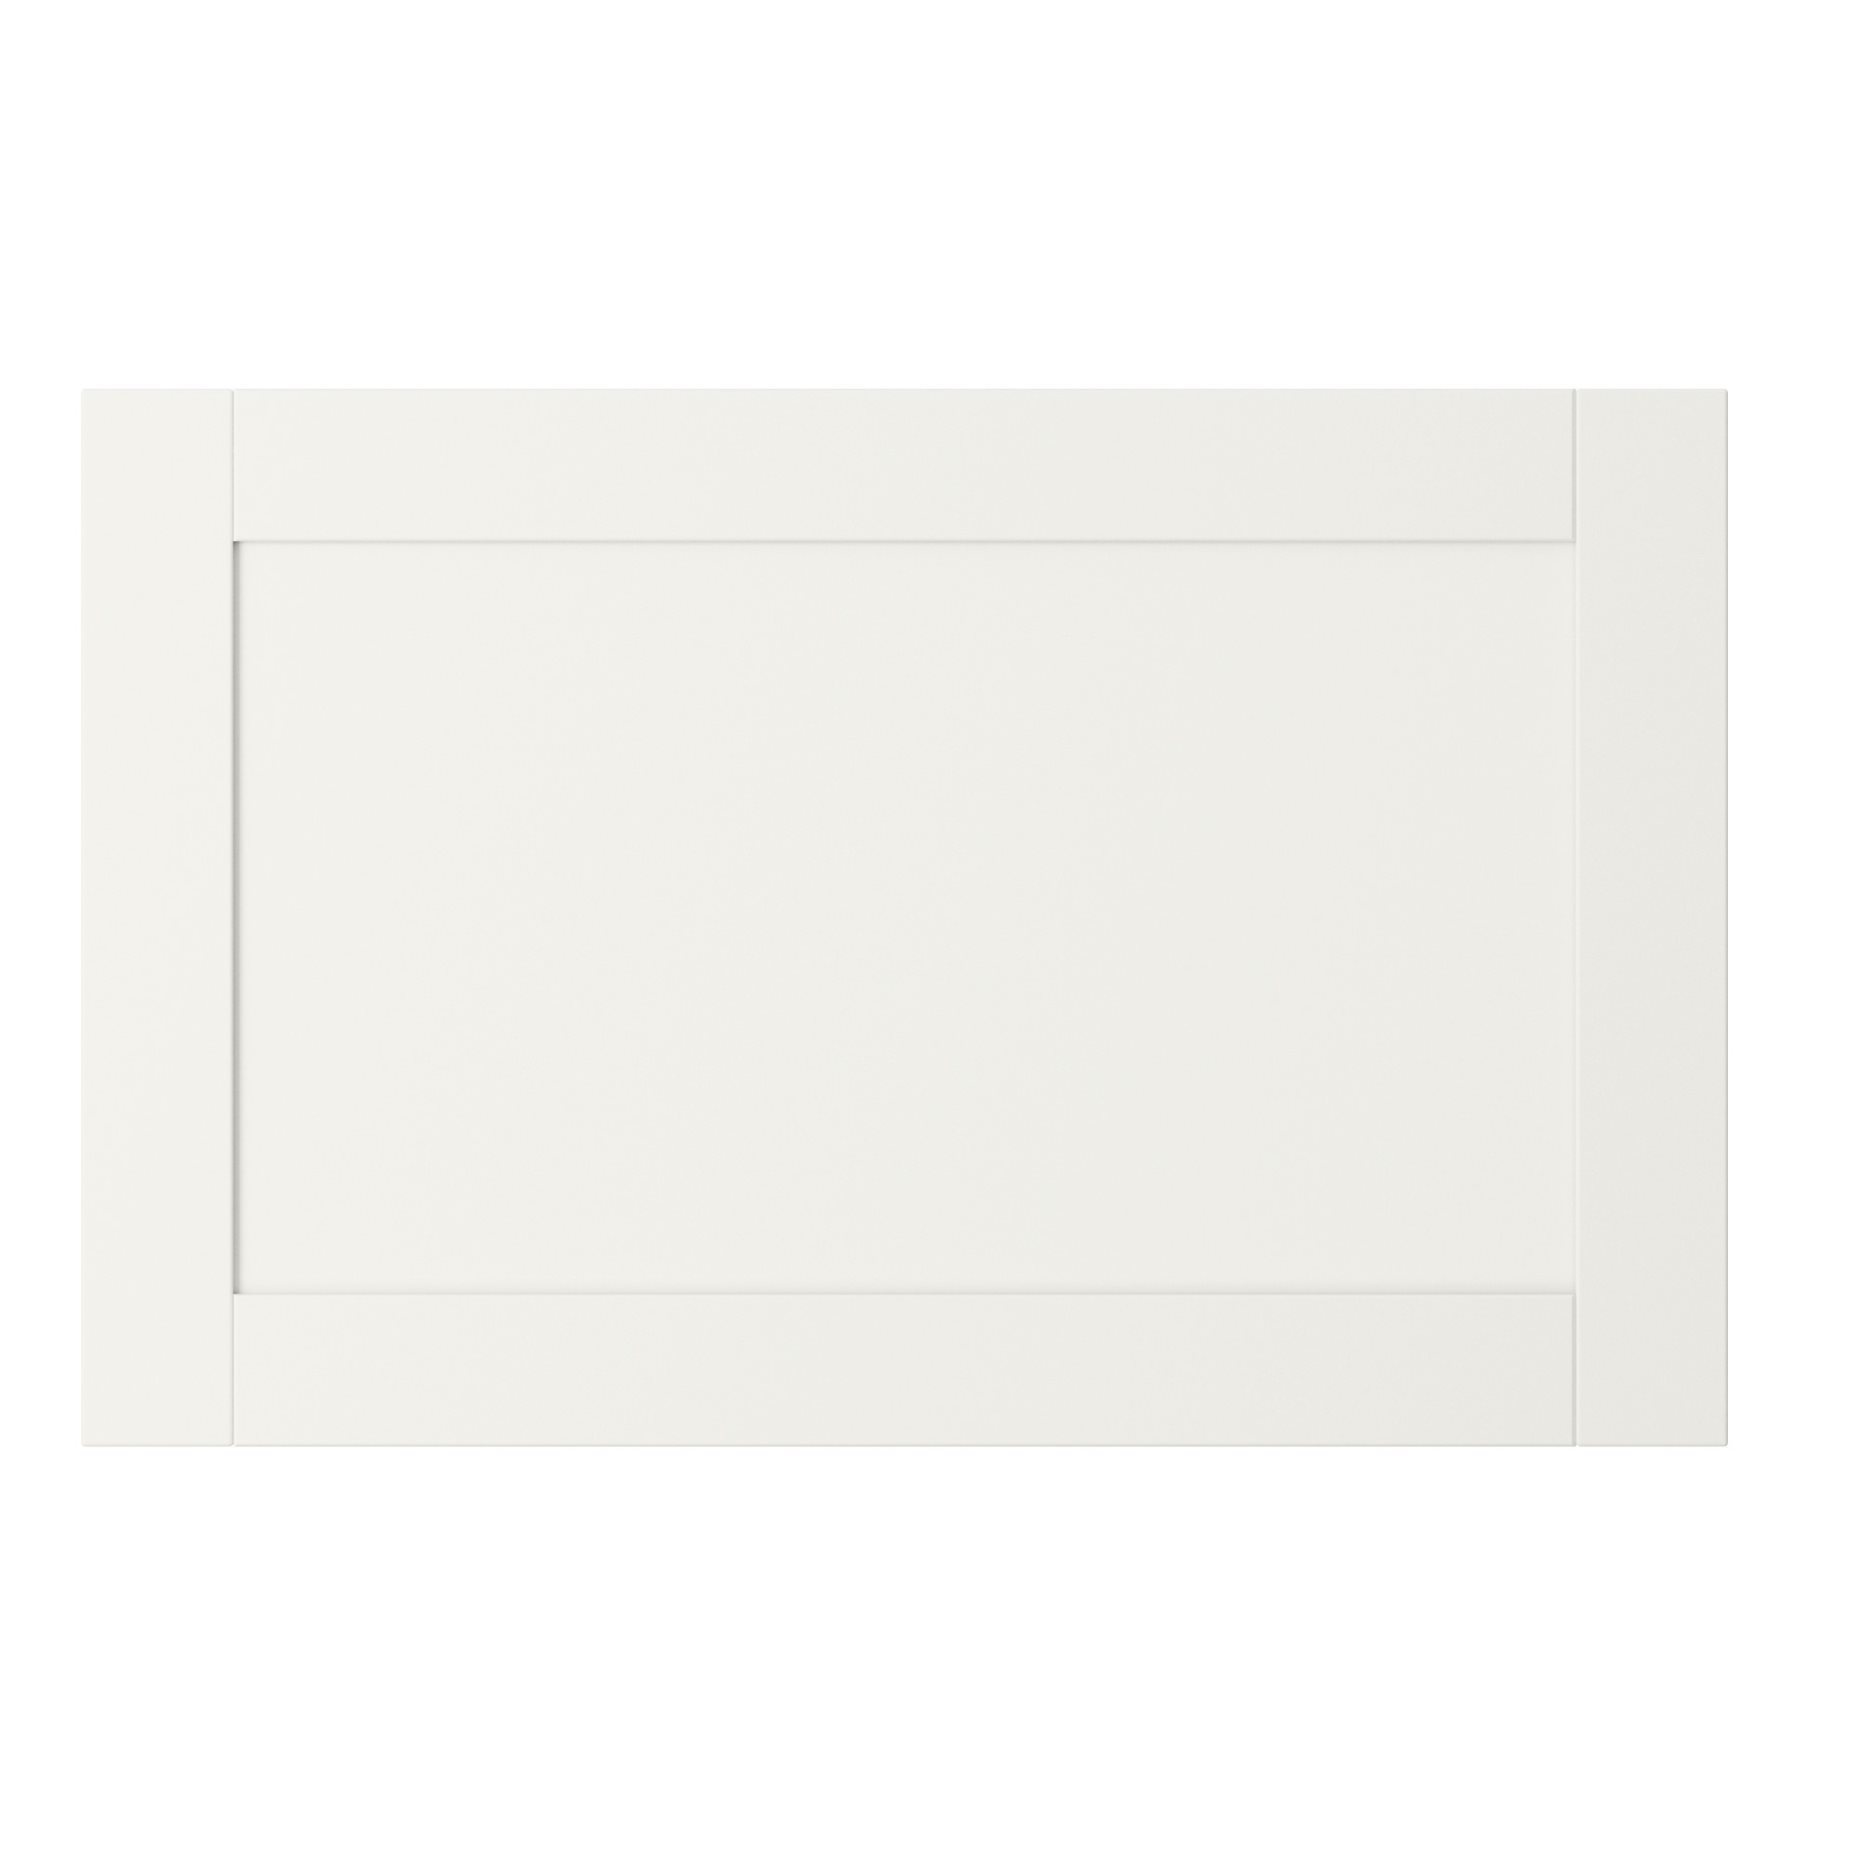 HANVIKEN, πόρτα/πρόσοψη συρταριού, 60x38 cm, 002.918.48